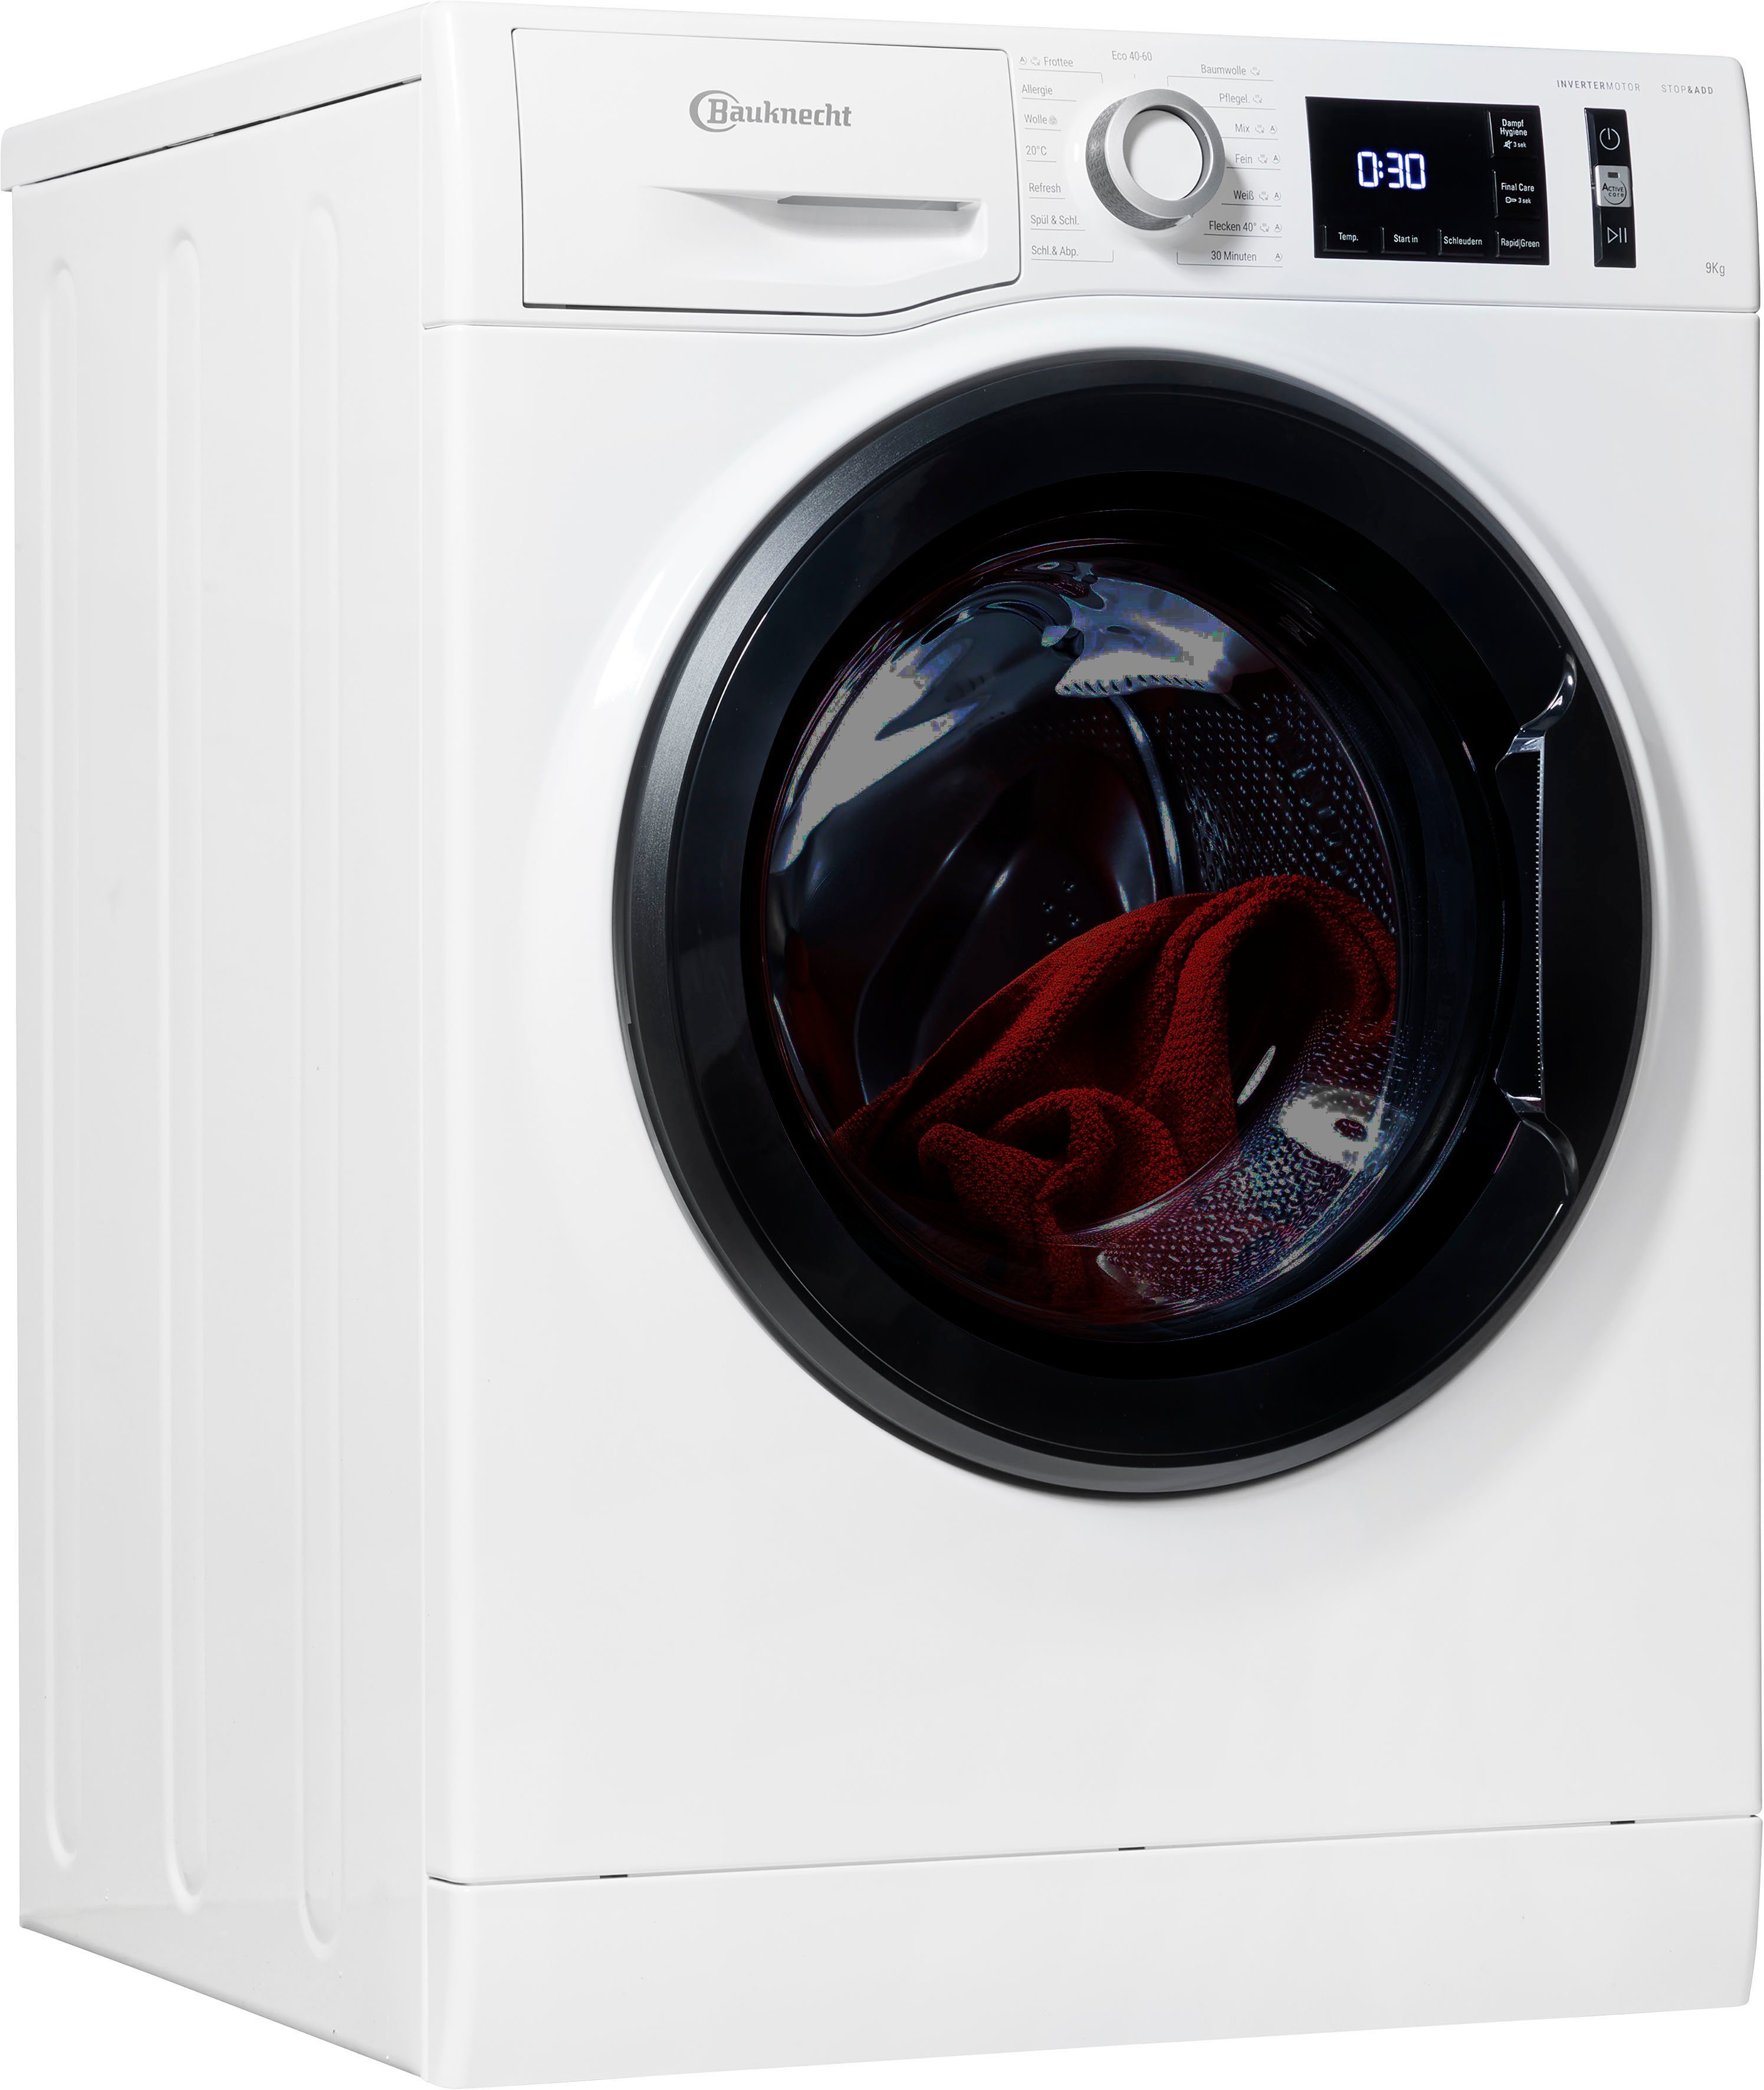 BAUKNECHT Waschmaschine Super Eco 9464 A, 9 kg, 1400 U/min